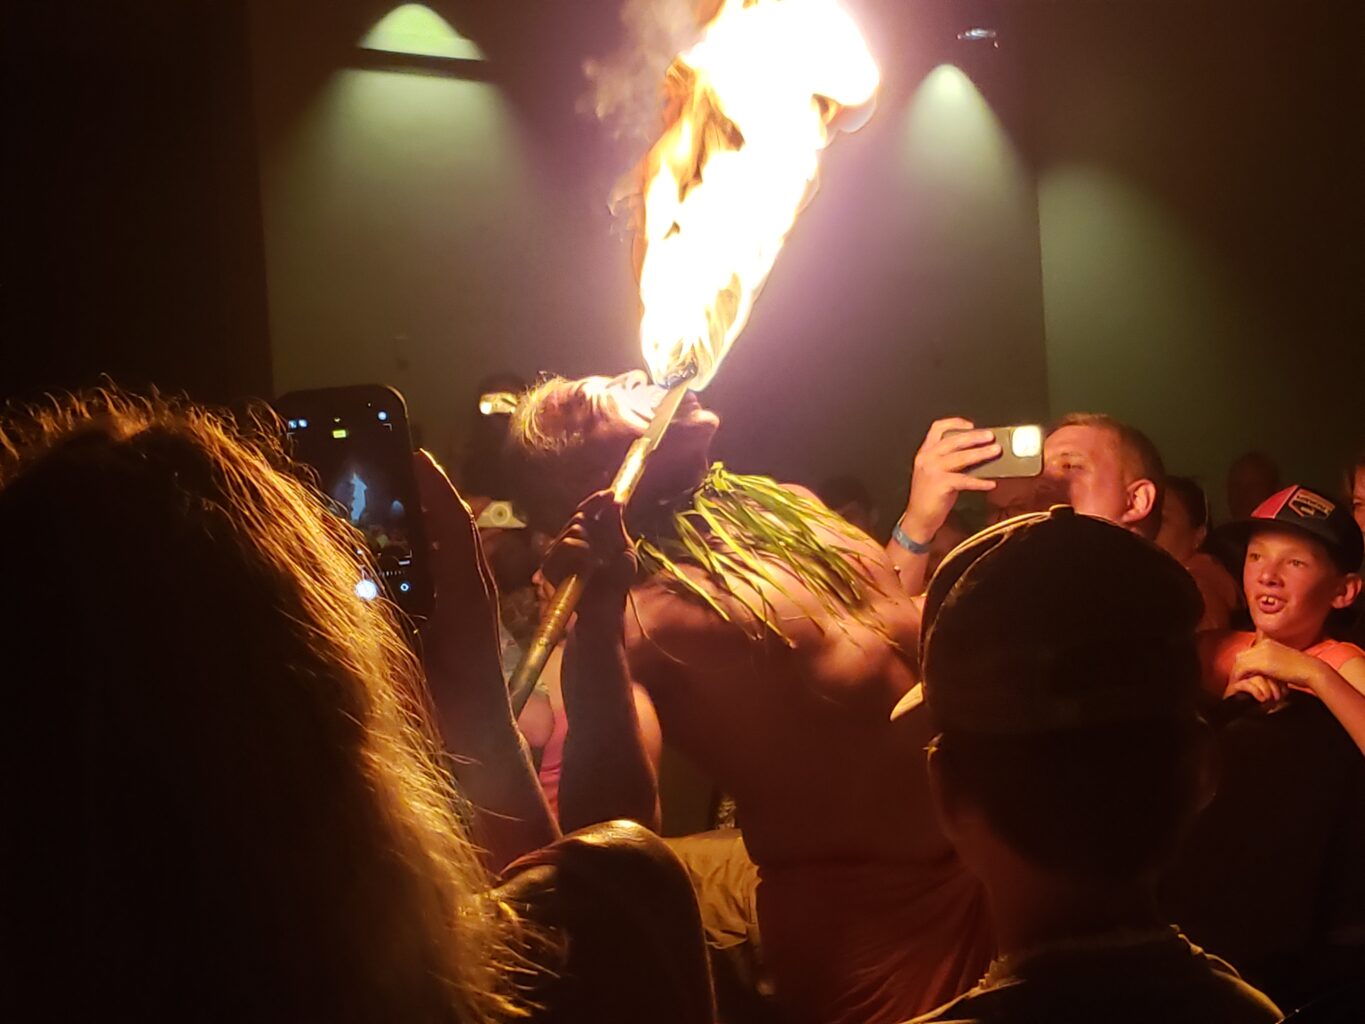 Hawai'ian man licking a flaming torch